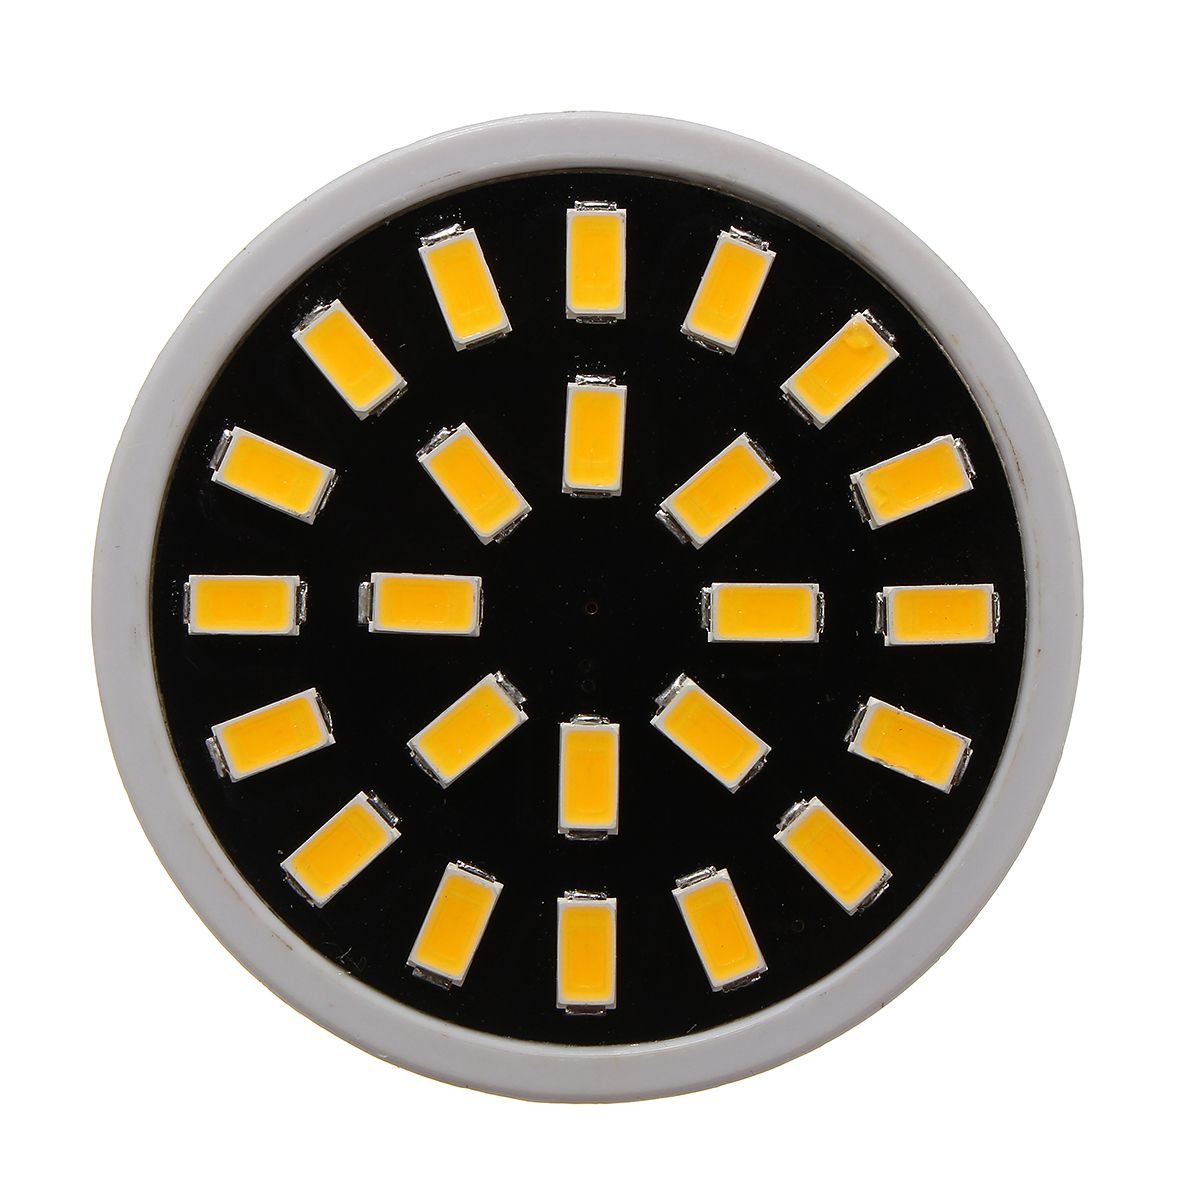 MR16E27GU10-LED-Bulb-24-SMD-5733-480LM-Pure-White-Warm-White-Spot-Lightt-Bulb-48W-AC220V-1111896